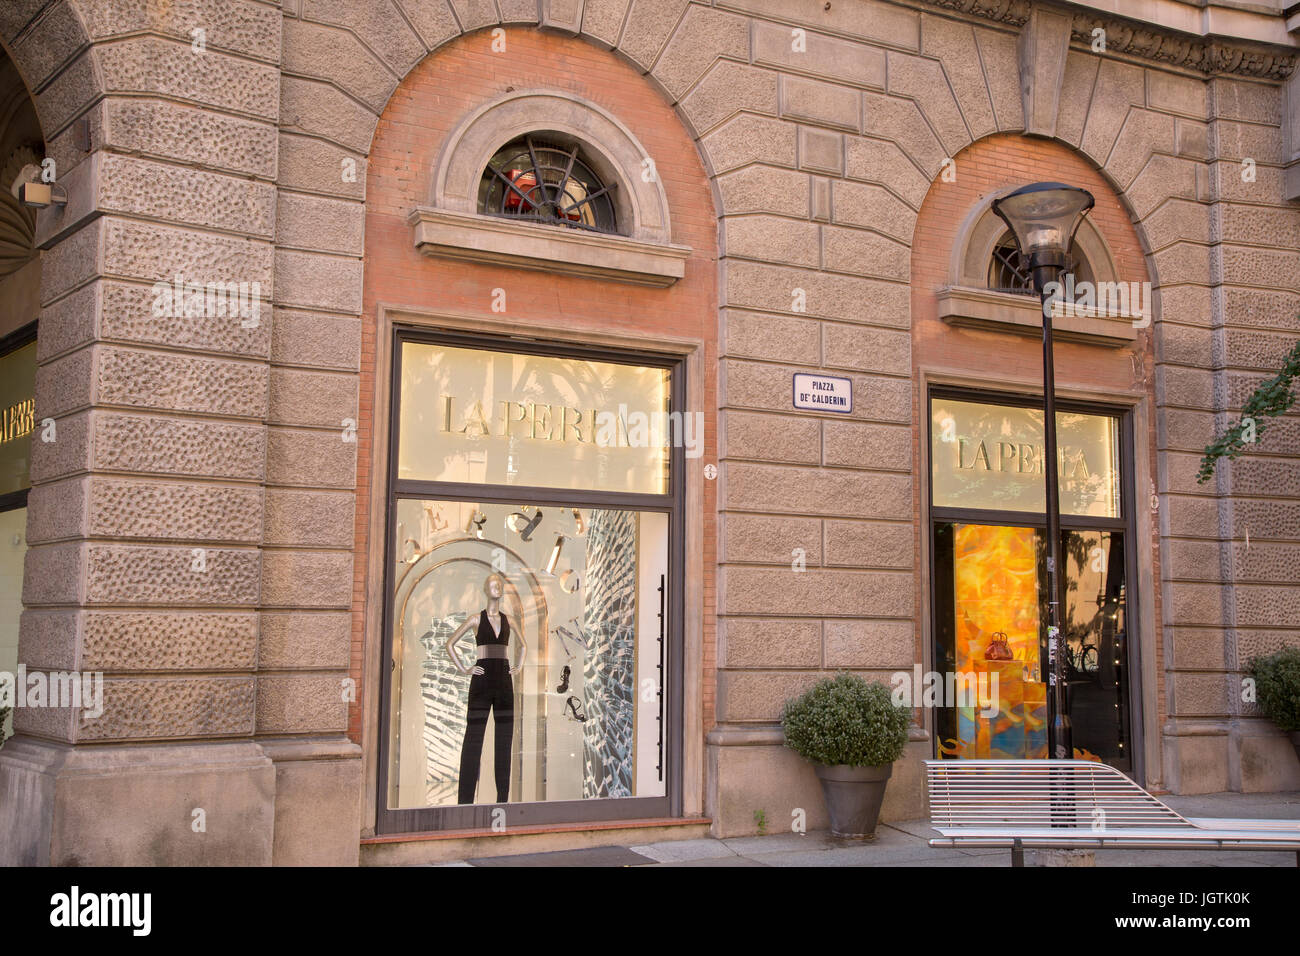 La Perla negozio di abbigliamento, Via Farini, Bologna, Italia Foto stock -  Alamy